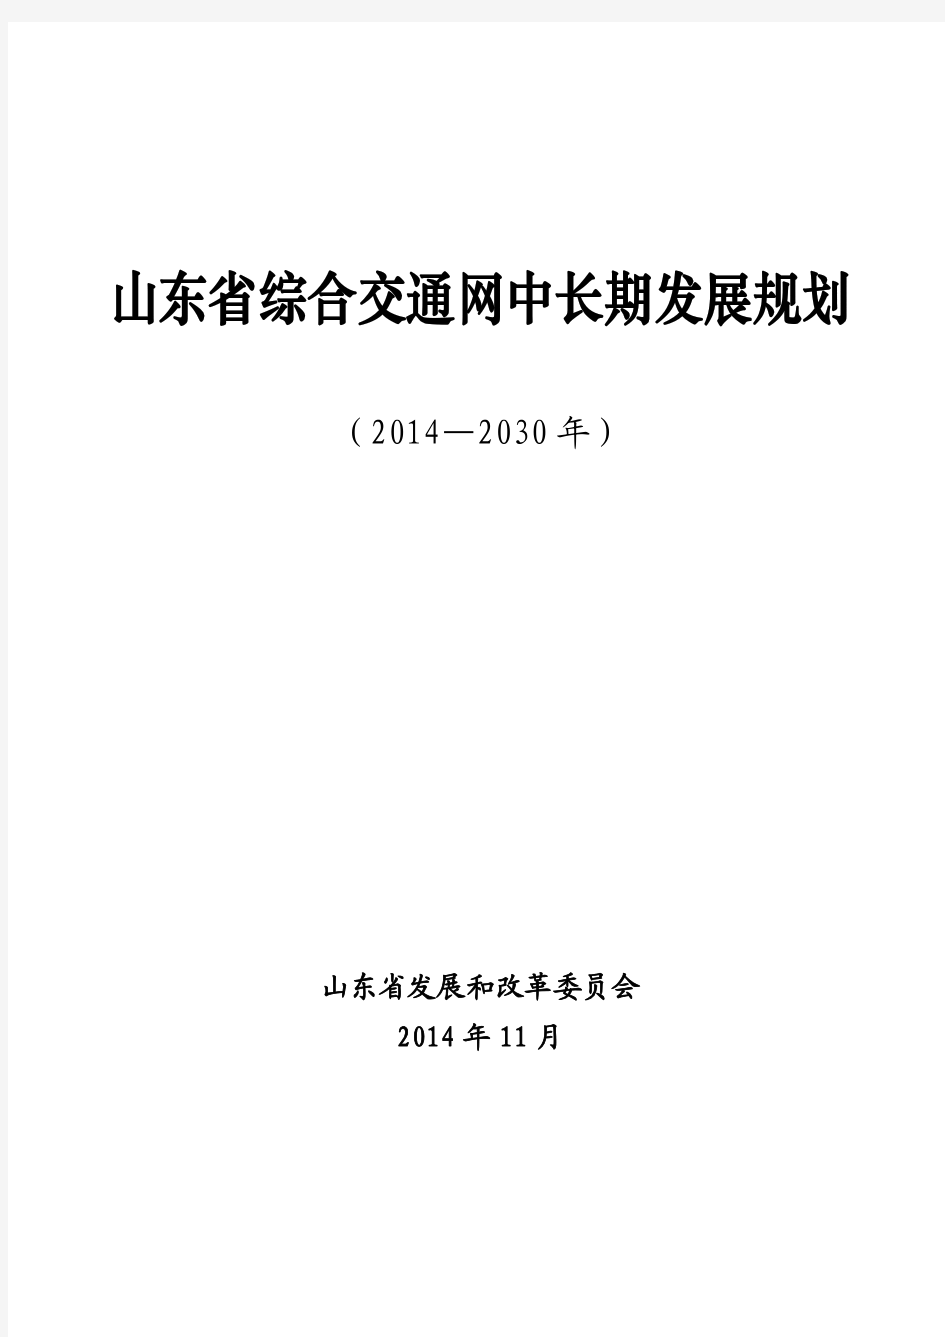 山东省综合交通网中长期发展规划(2014-2030年)